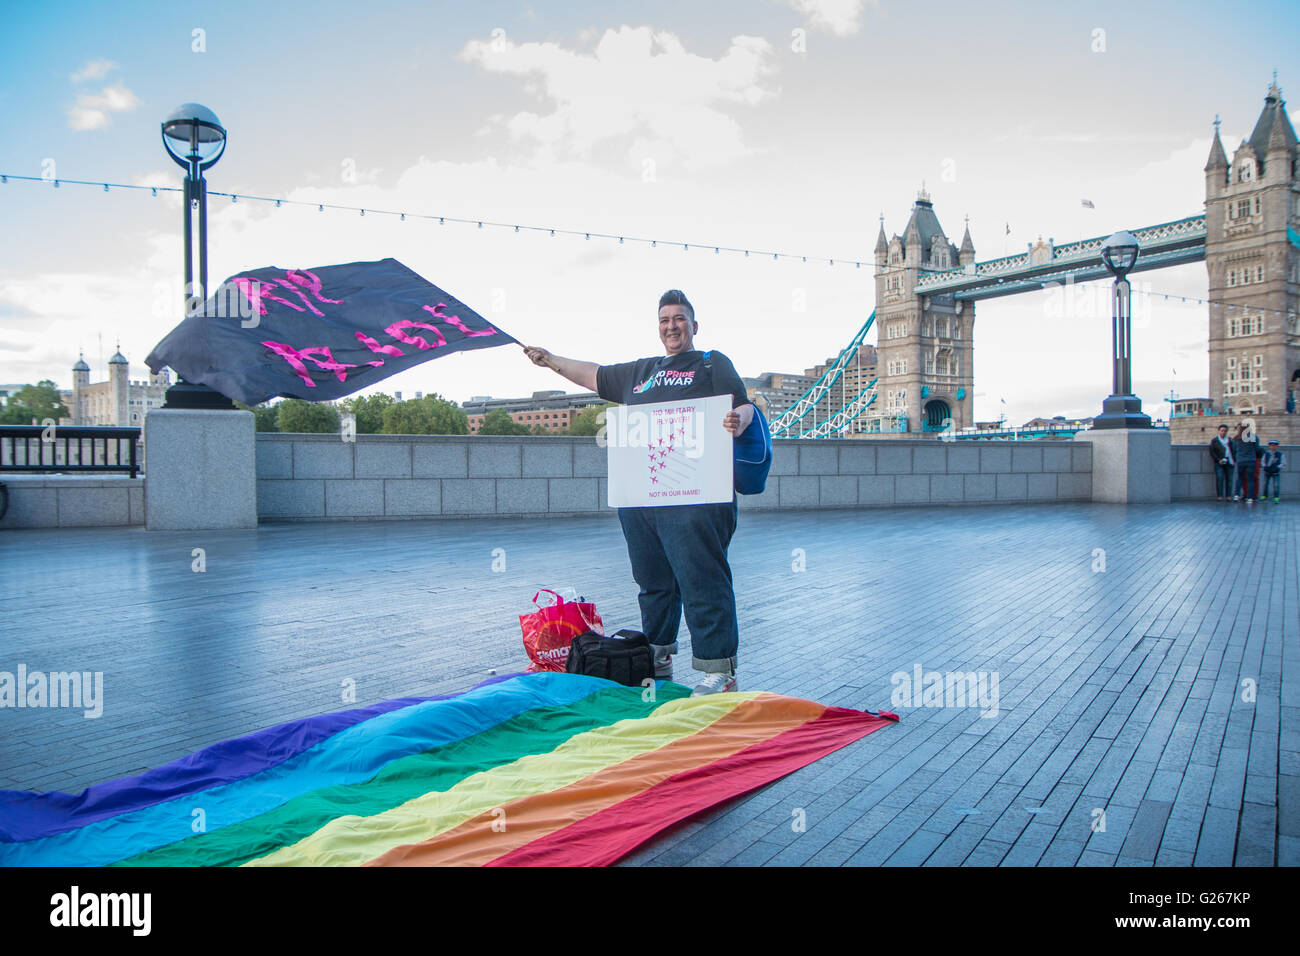 Londres, Royaume-Uni. 24 mai, 2016. Pas de fierté dans la guerre manifestation devant l'hôtel de ville, London Crédit : Zefrog/Alamy Live News Banque D'Images